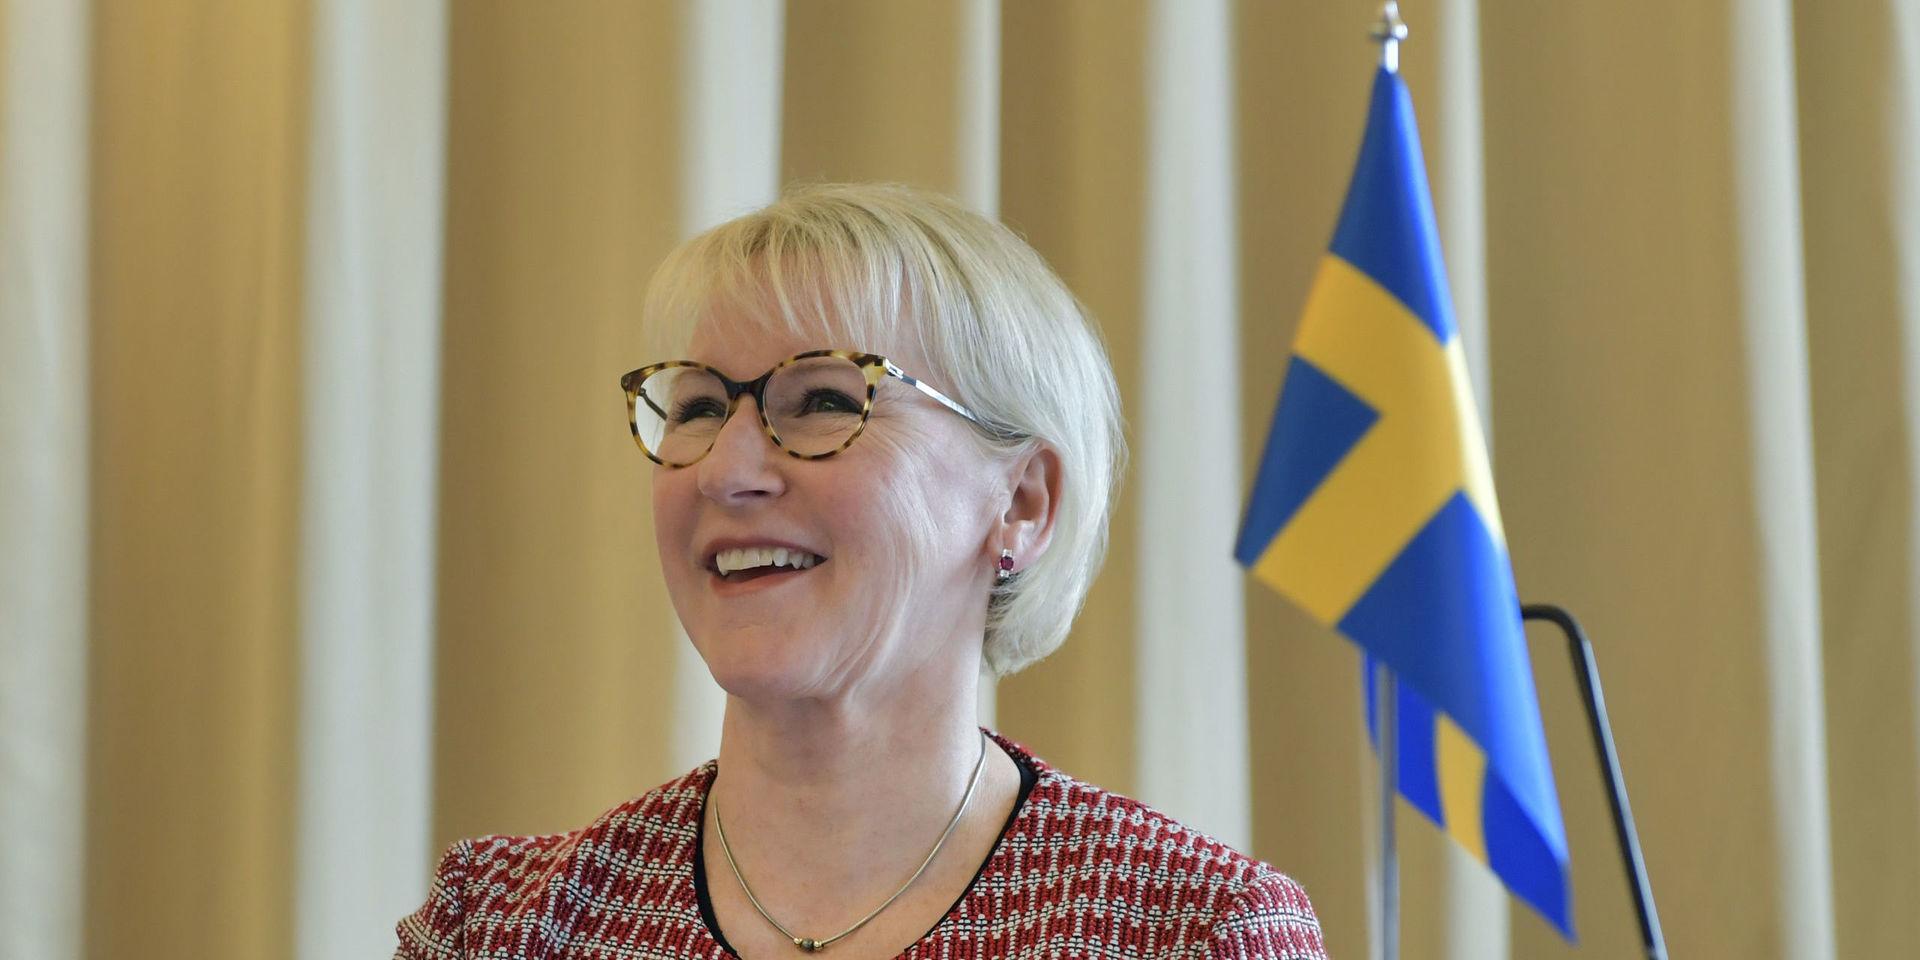 Som utrikesminister har Margot Wallström haft användning av sin stridbarhet. Av maken Håkan har hon dock lärt sig tålamod. &quot;Jag är mera medgörlig nu. Jag kan ge mig&quot;, säger hon.